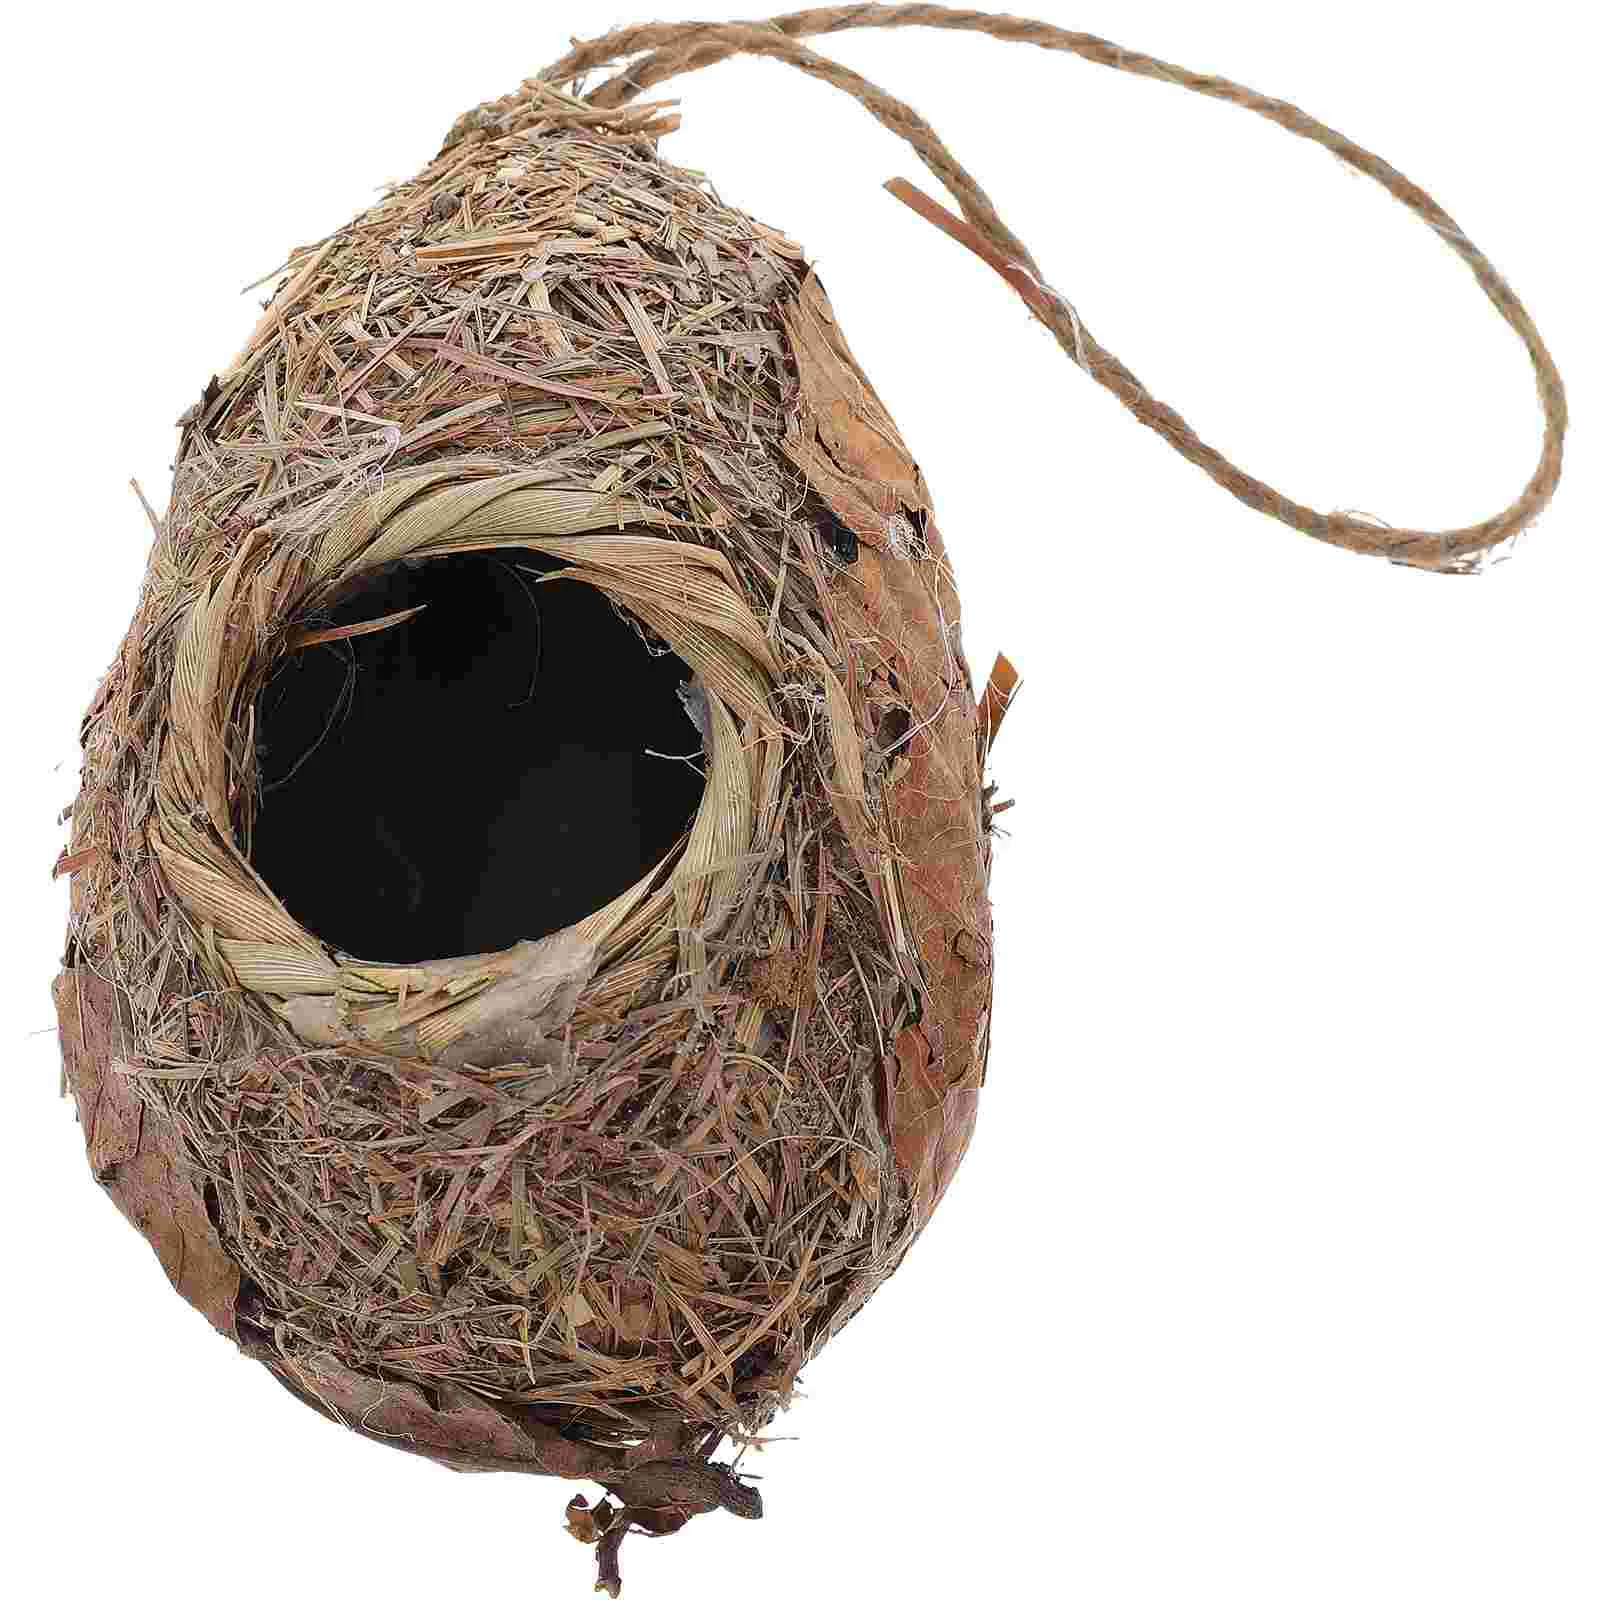 

Birdhouse Bird House Decor Gardening Bird Nest Gardening Decor Hanging Bird Nest for Garden Home Park